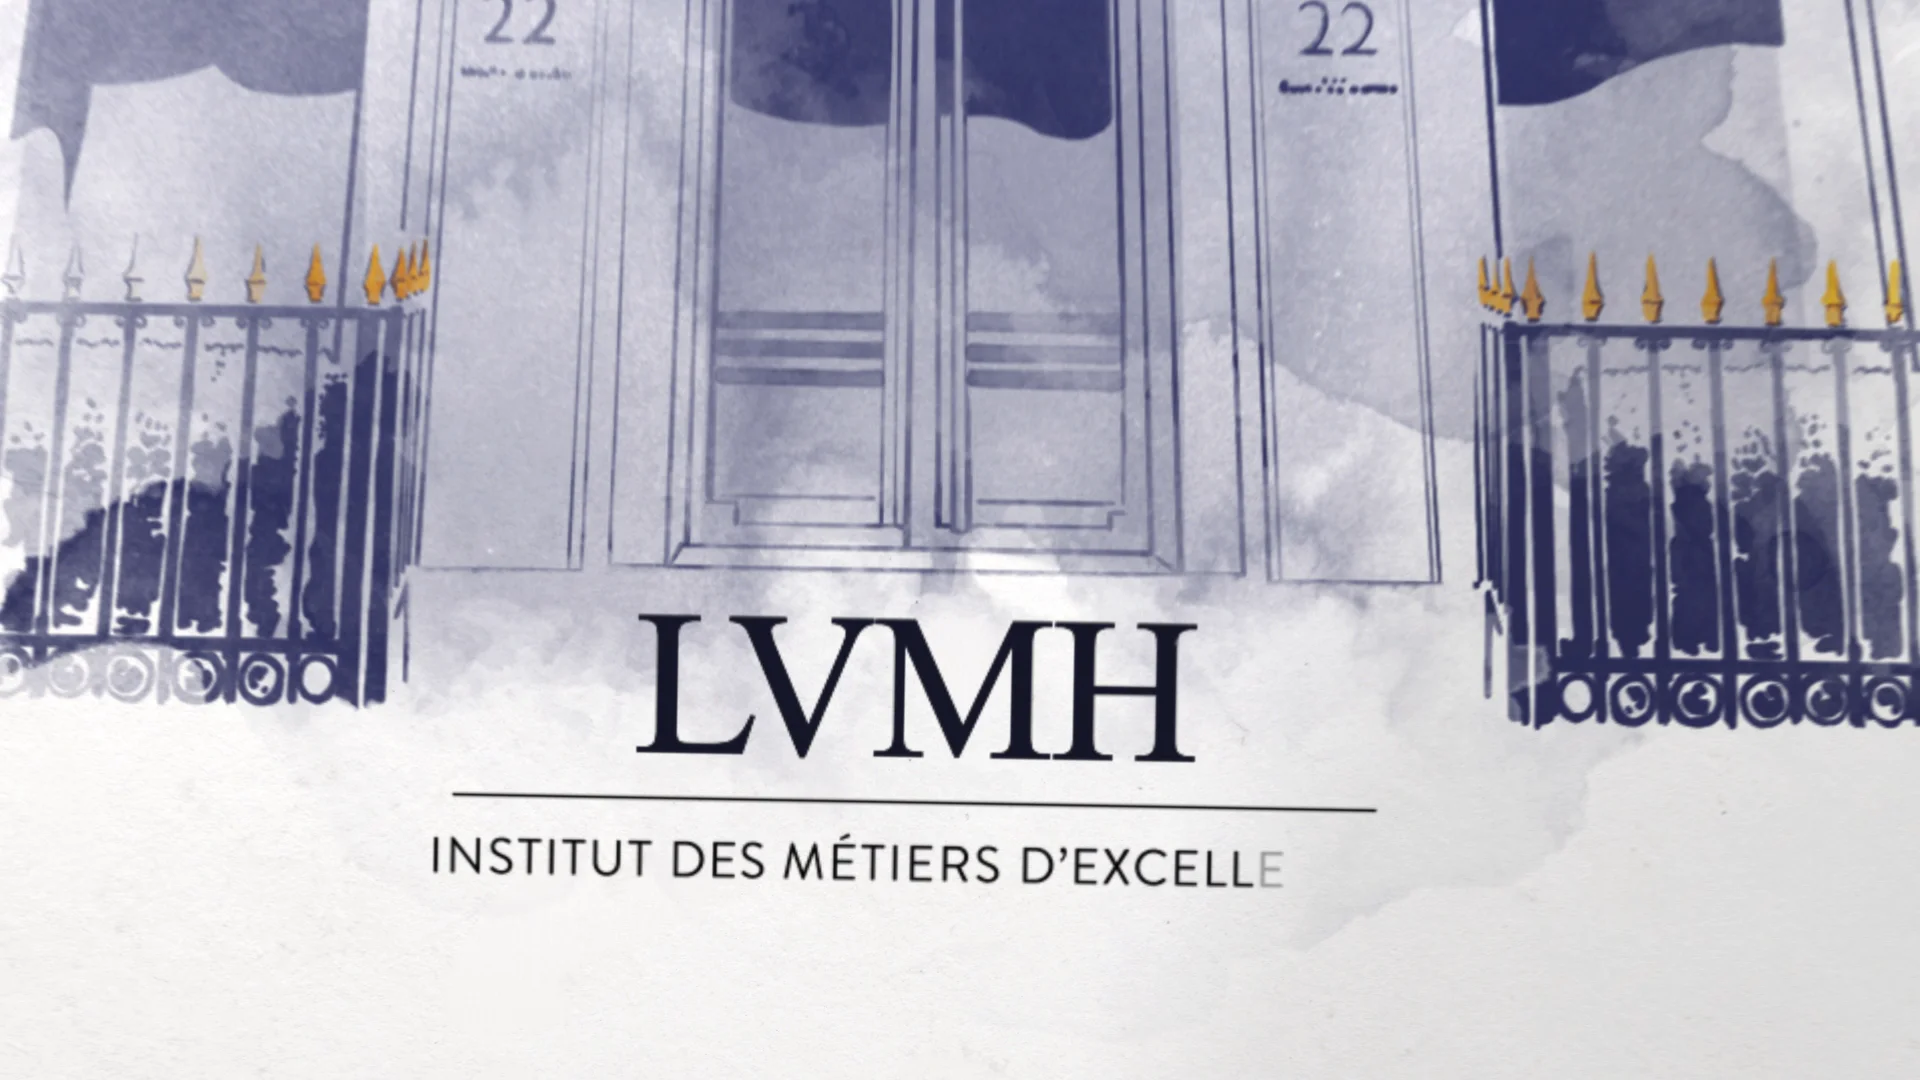 LVMH - Institut des Métiers d'Excellence on Vimeo